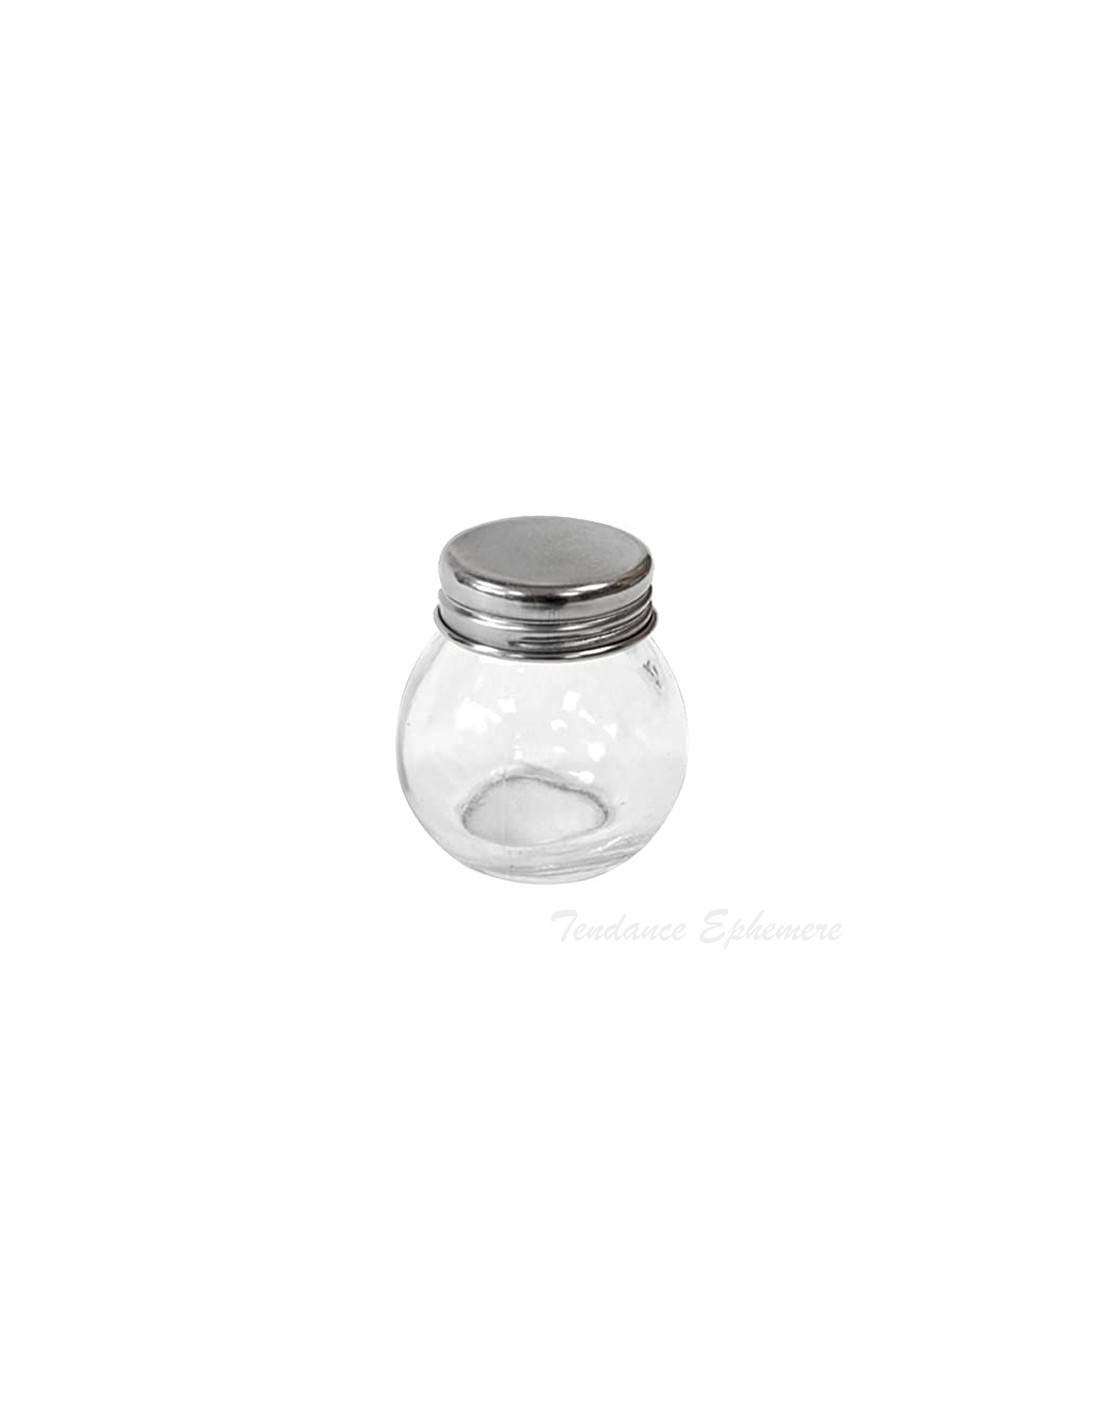 Petit pot en verre rond avec son bouchon métal, idéal pour un mariage